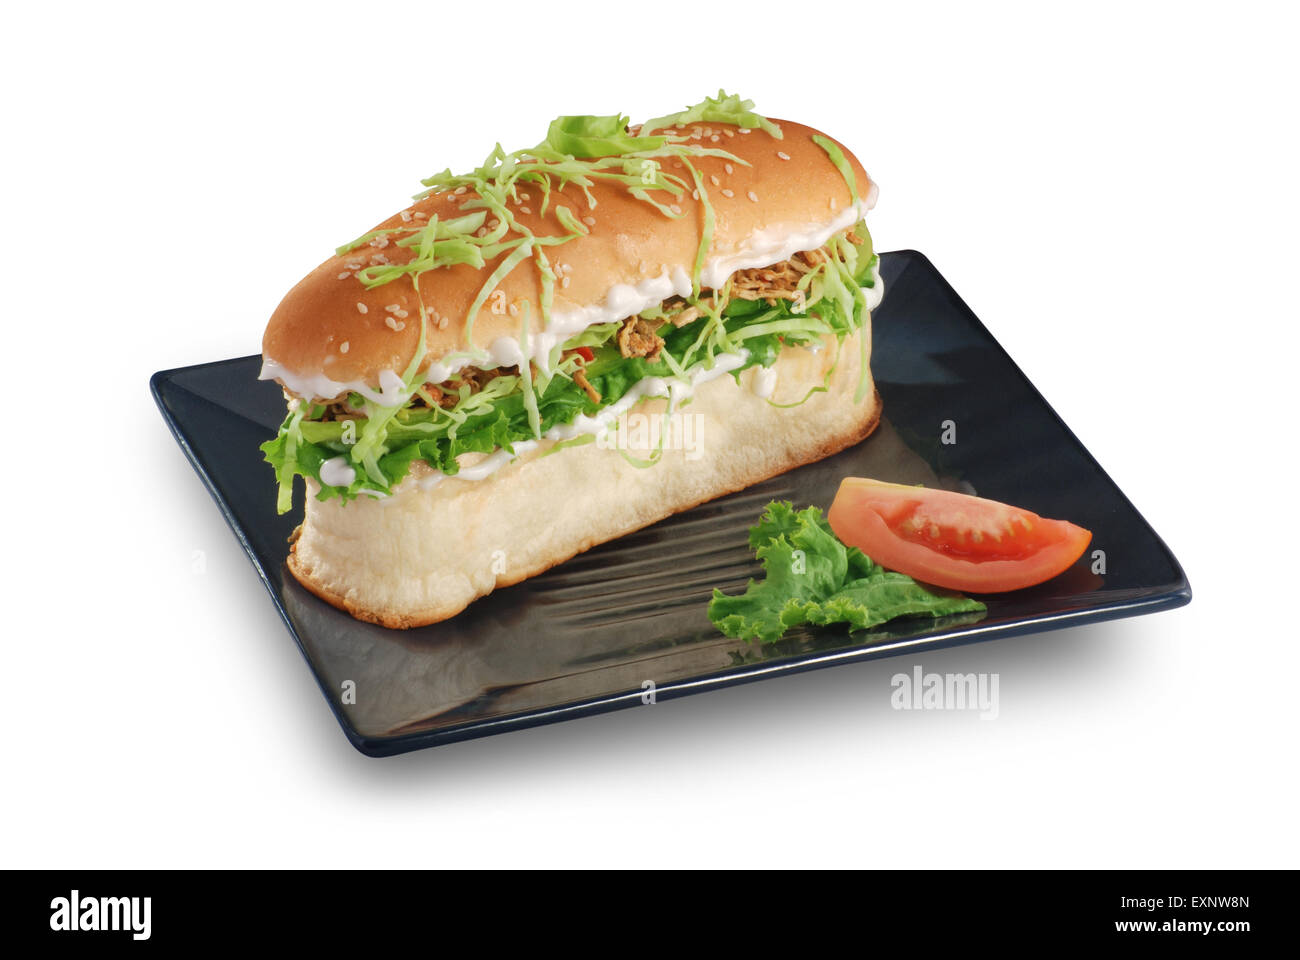 Carni bovine & Burger vegetale Foto Stock